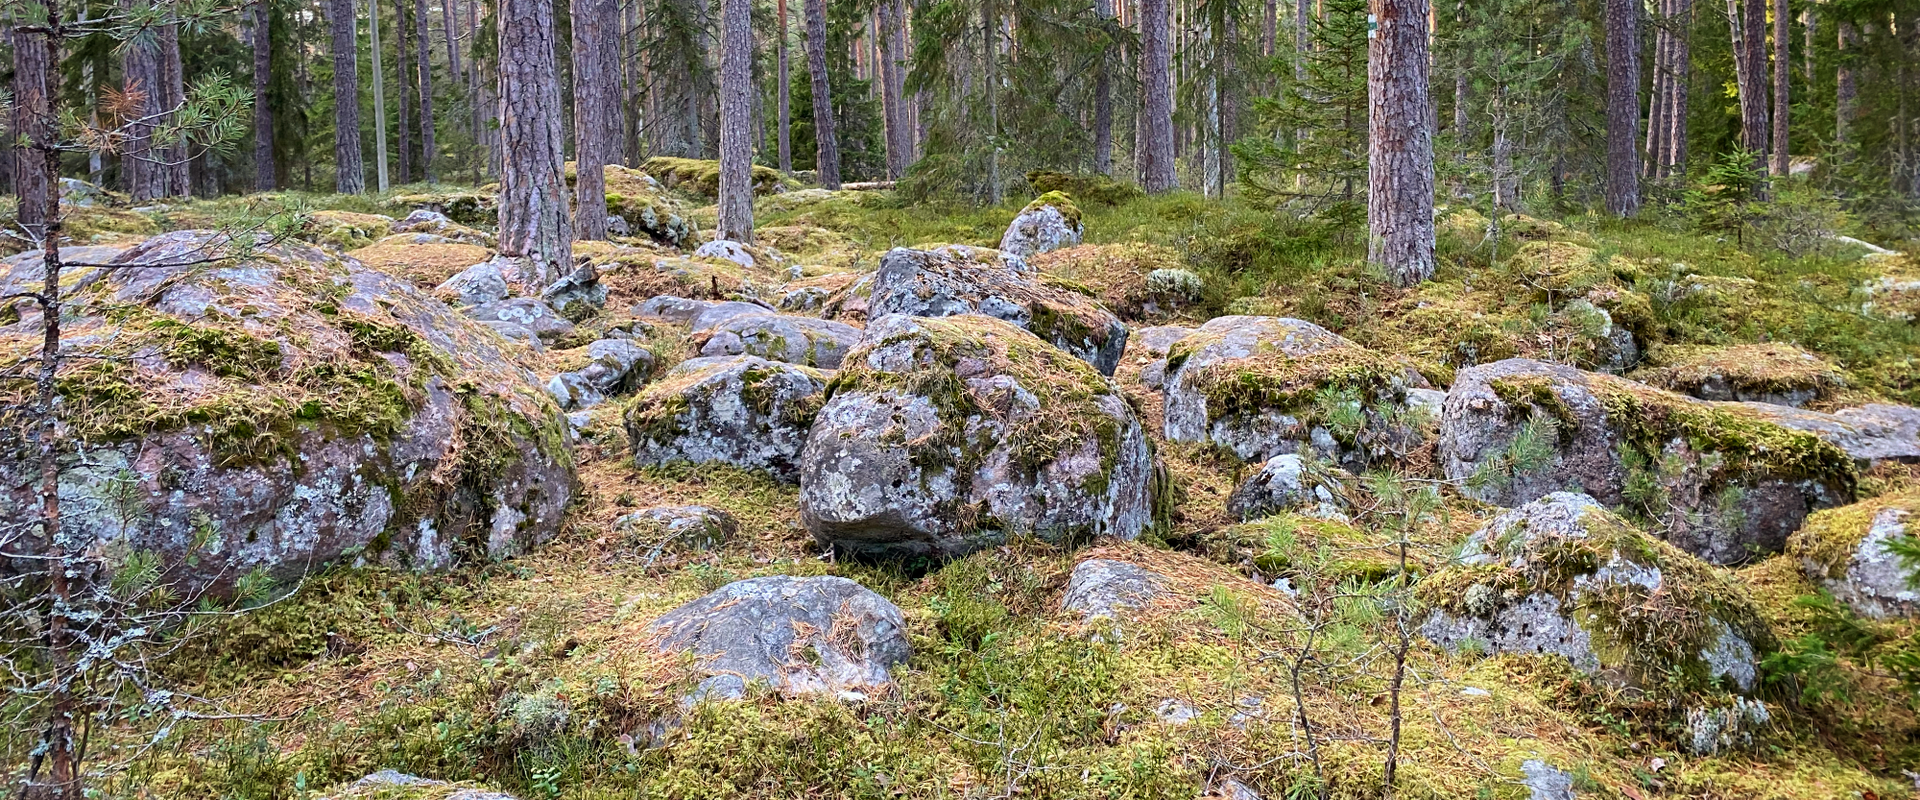 Käsmu kaptenite küla lõpus vasakul metsas paikneb Eesti suurim kivikülv. See on paik, kuhu on kokku kuhjunud suur hulk massiivseid rändrahne. Suurim k